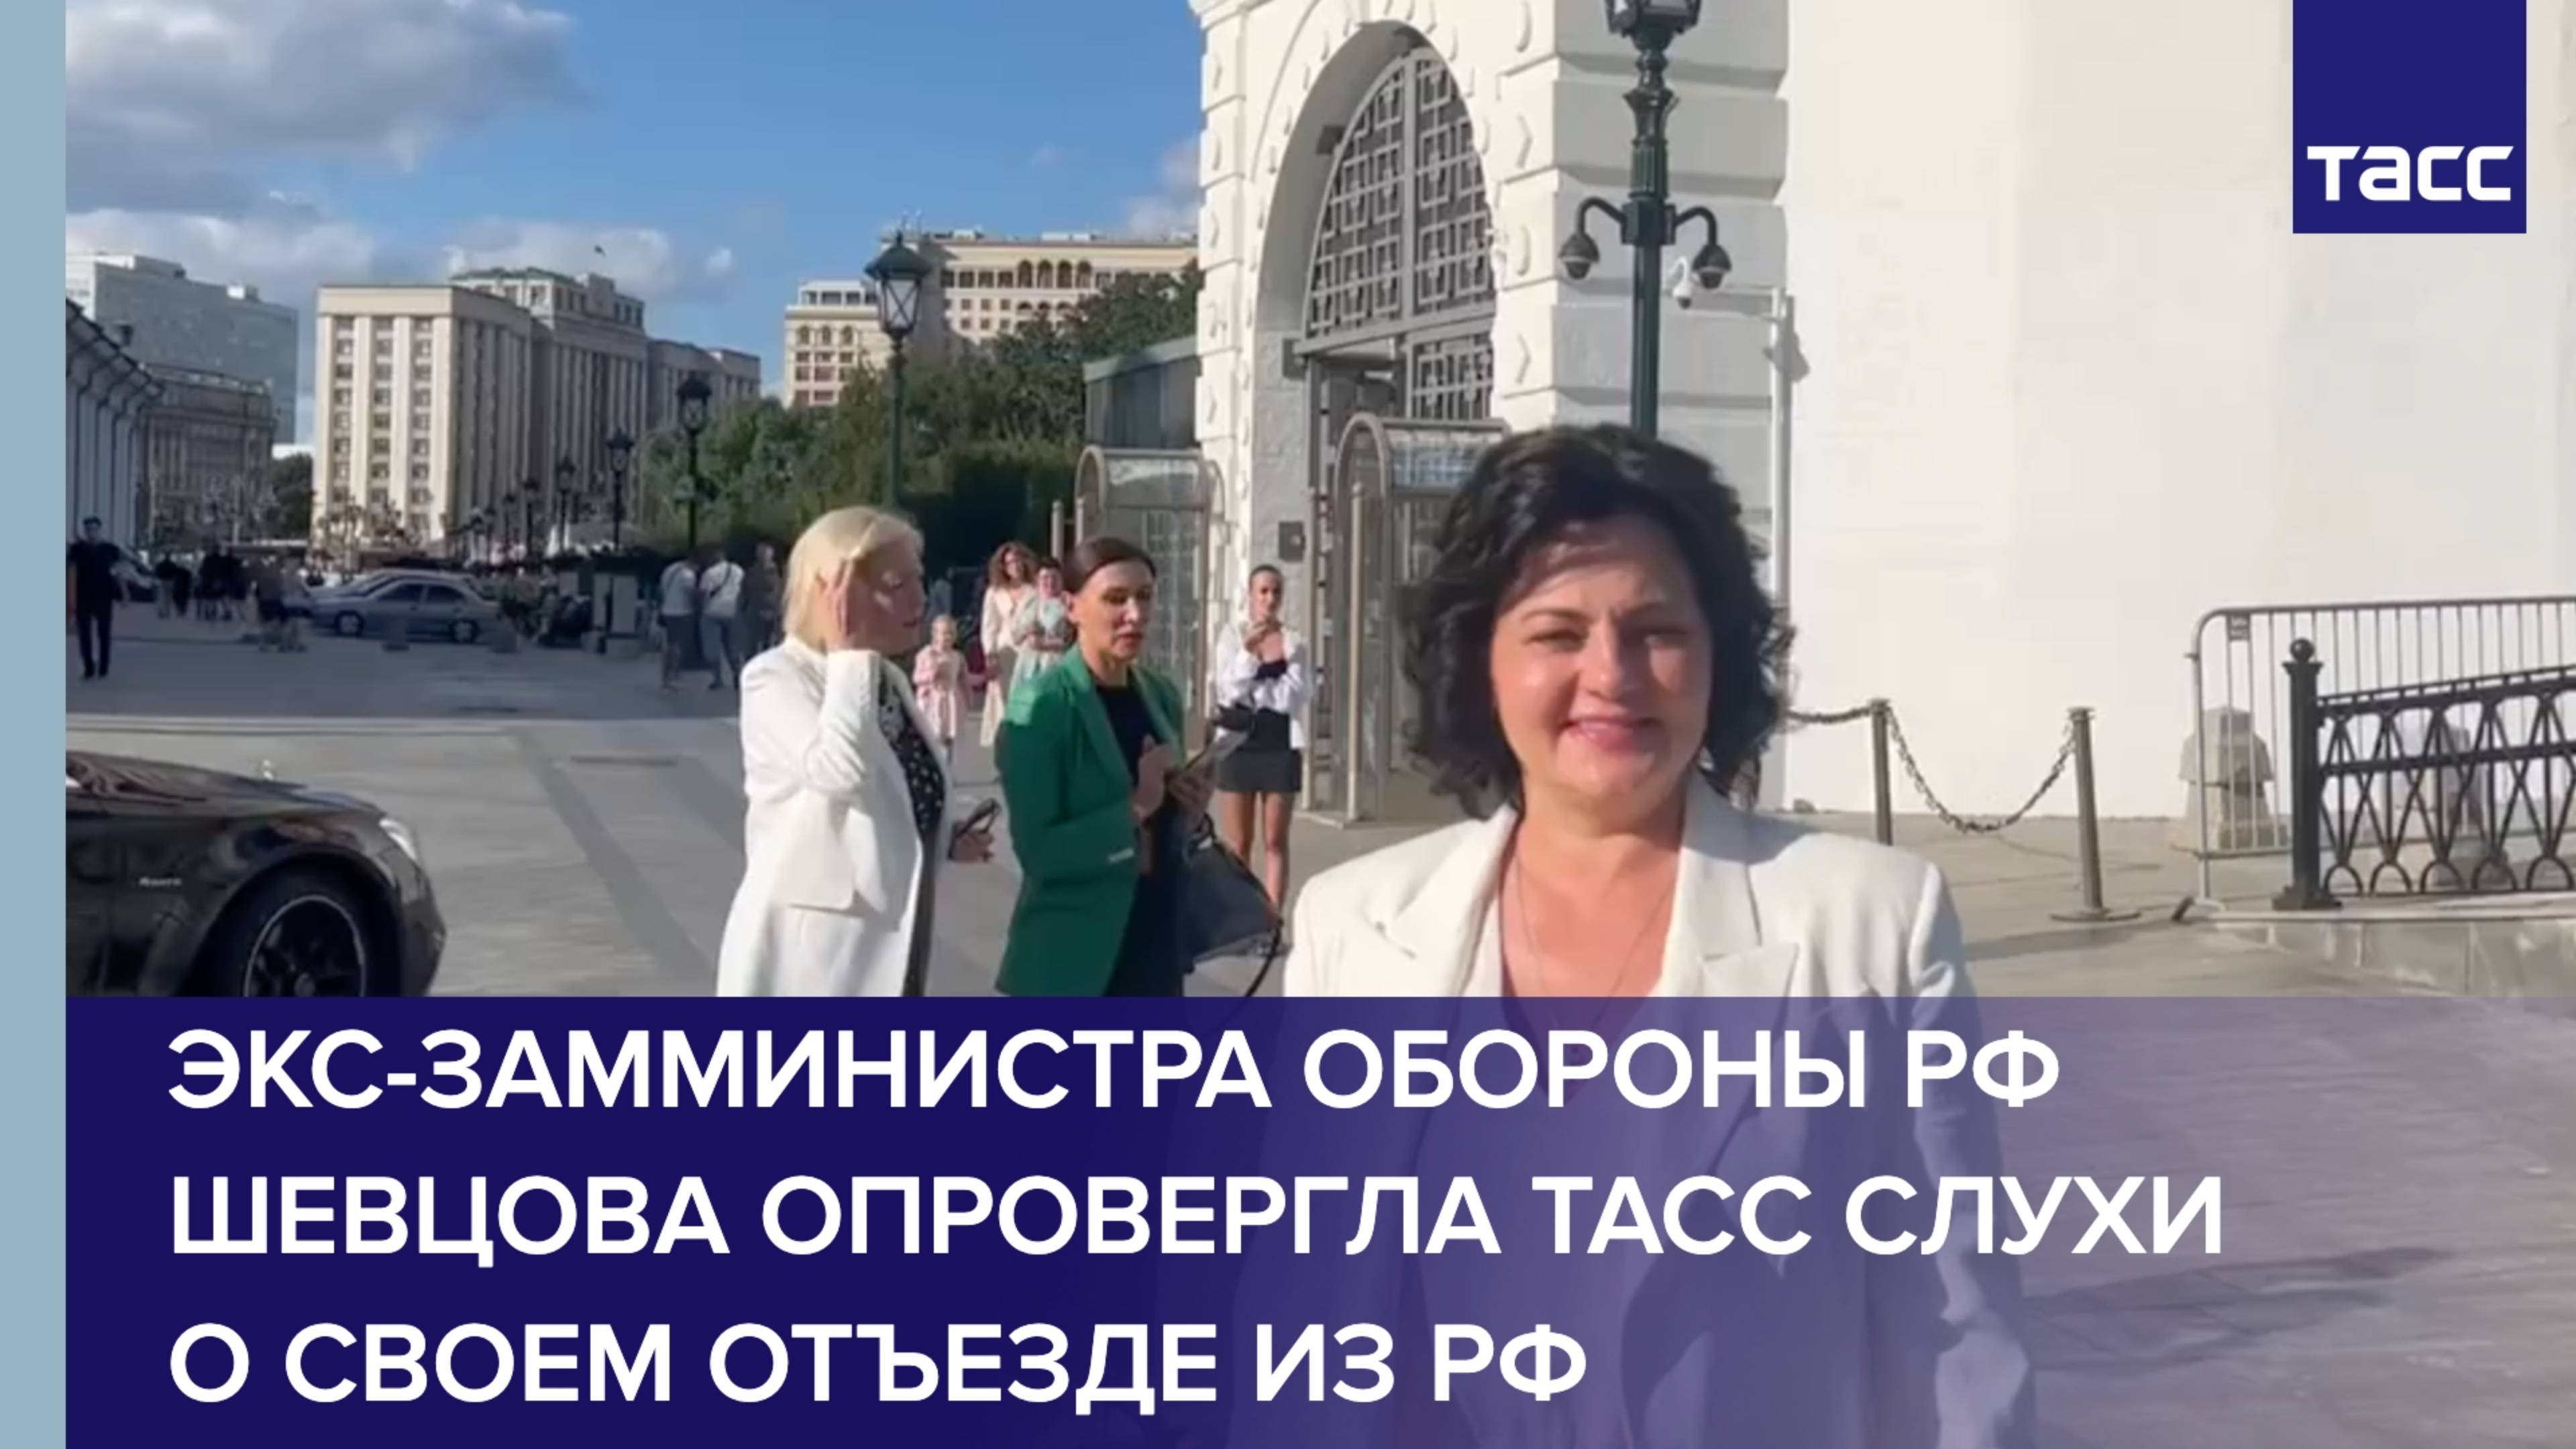 Шевцова опровергла ТАСС слухи о своем отъезде из РФ